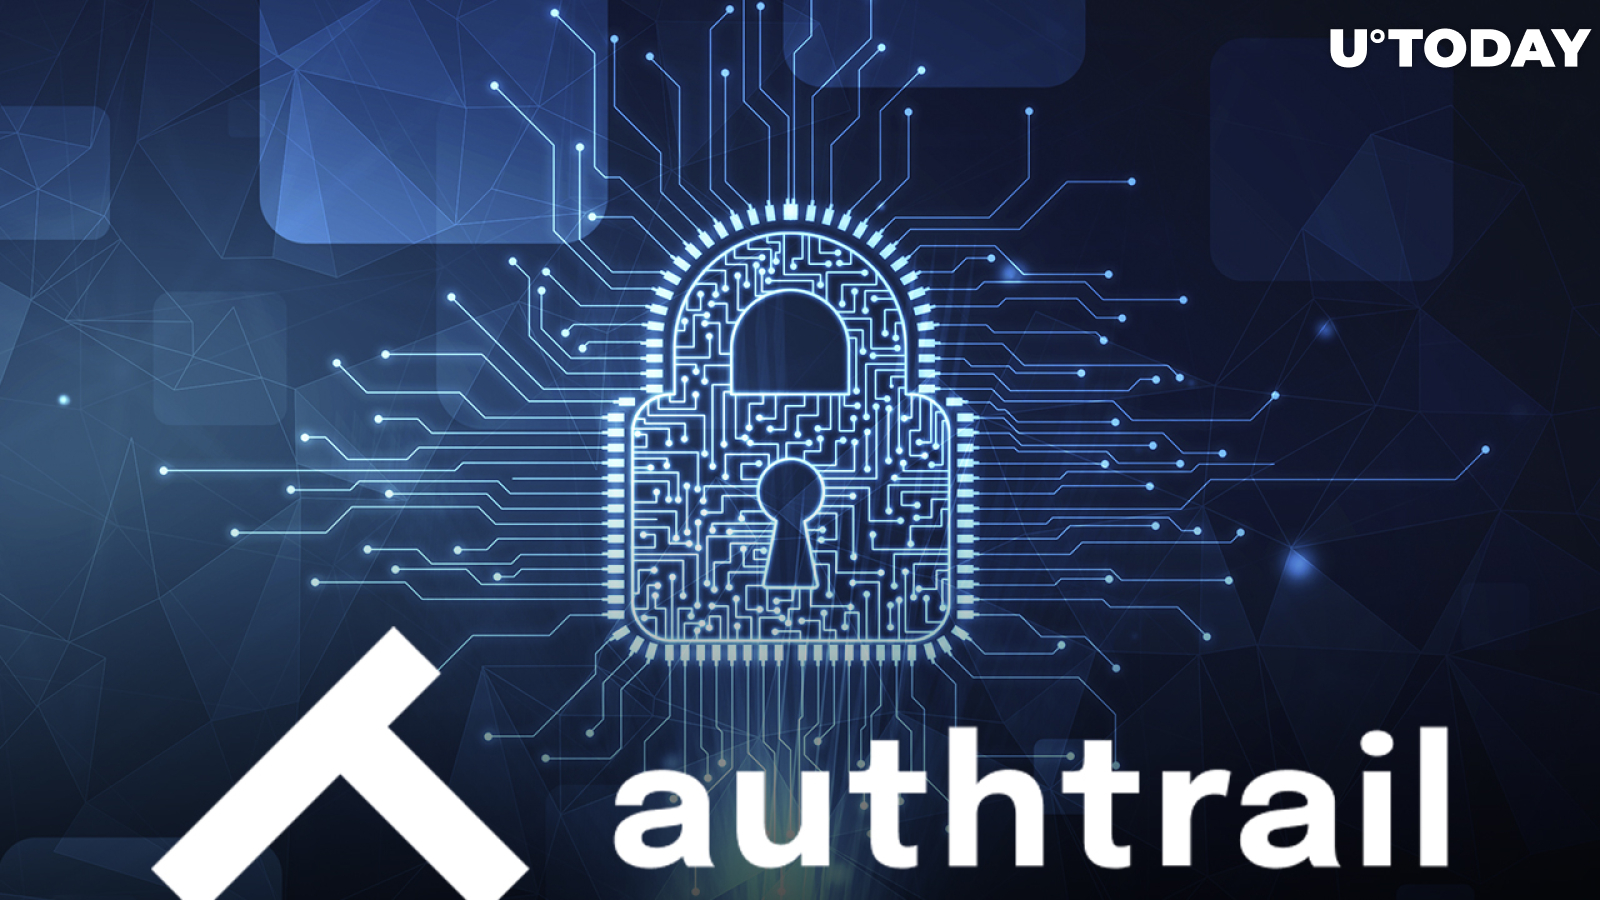 Authtrail SaaS Platform Announces Closed AUT Tokensale: Details